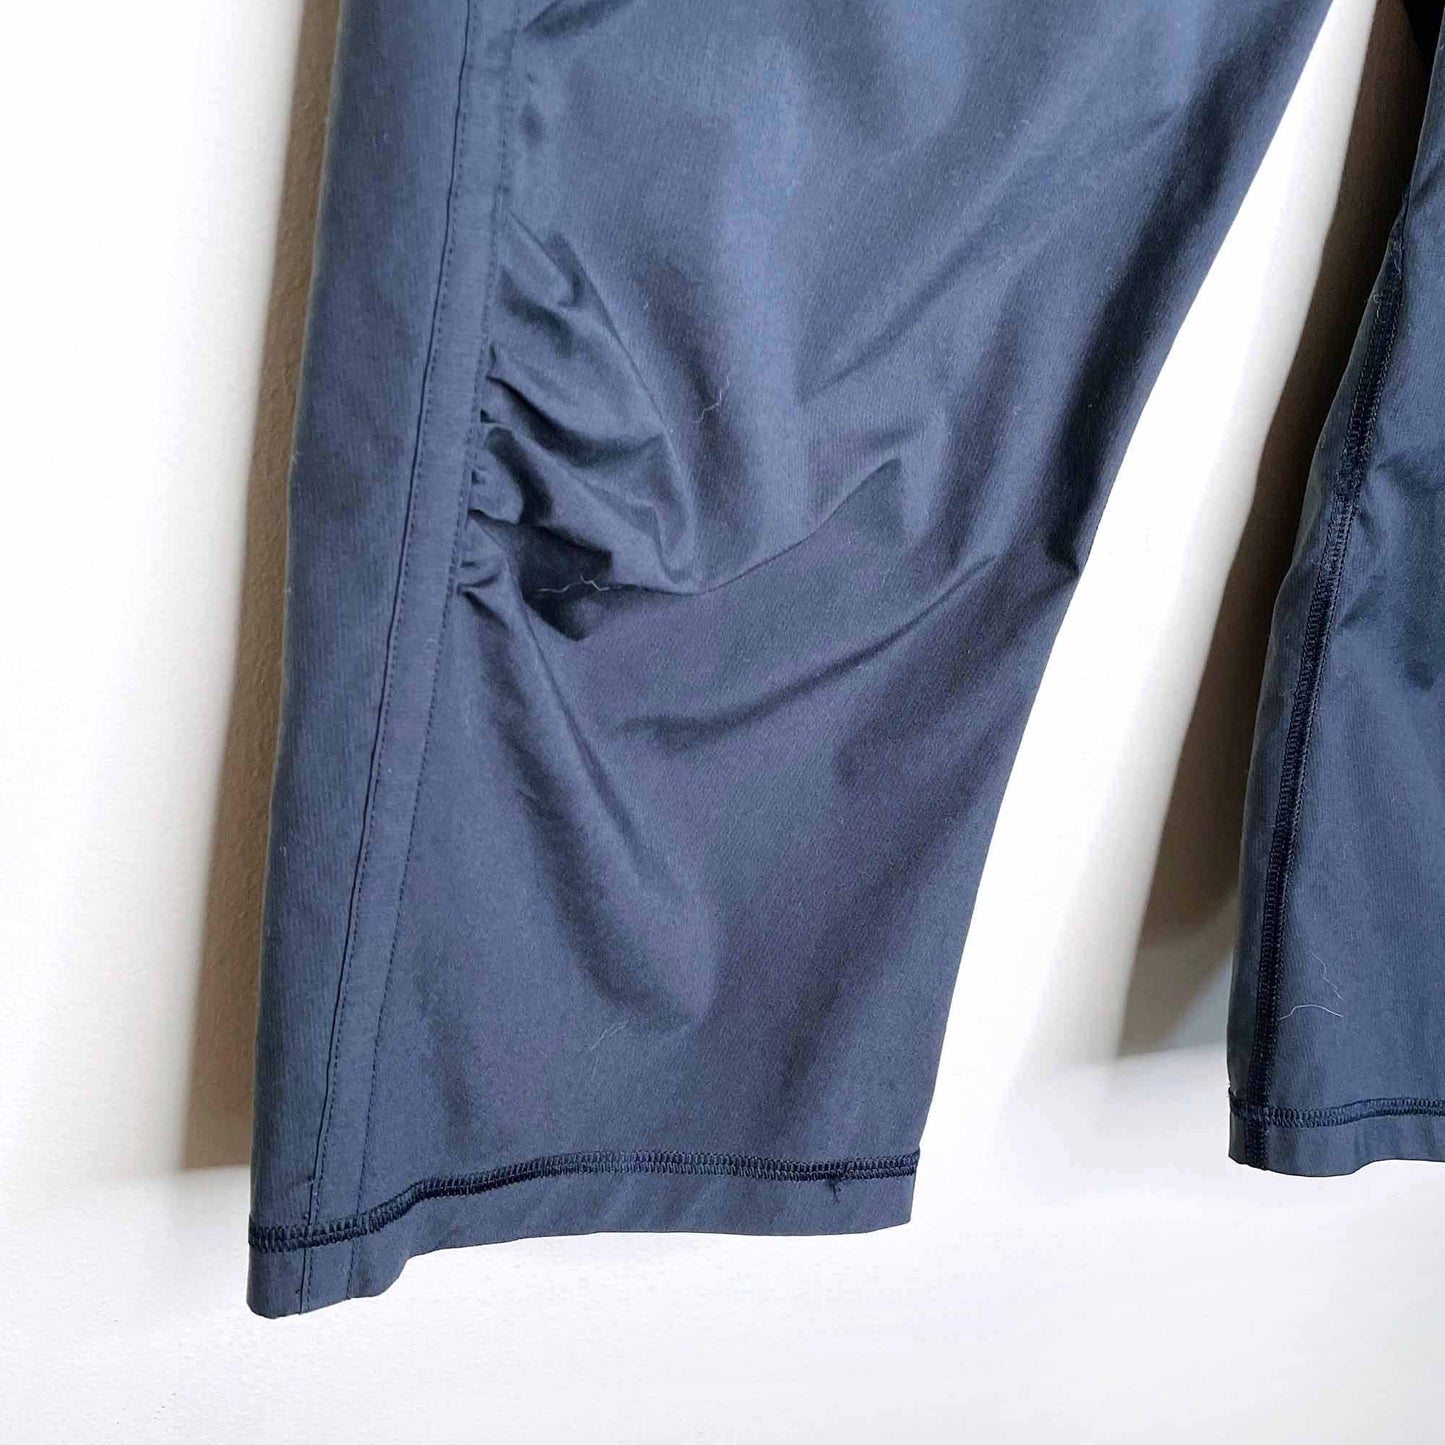 lululemon mid-rise studio crop pants - size 8